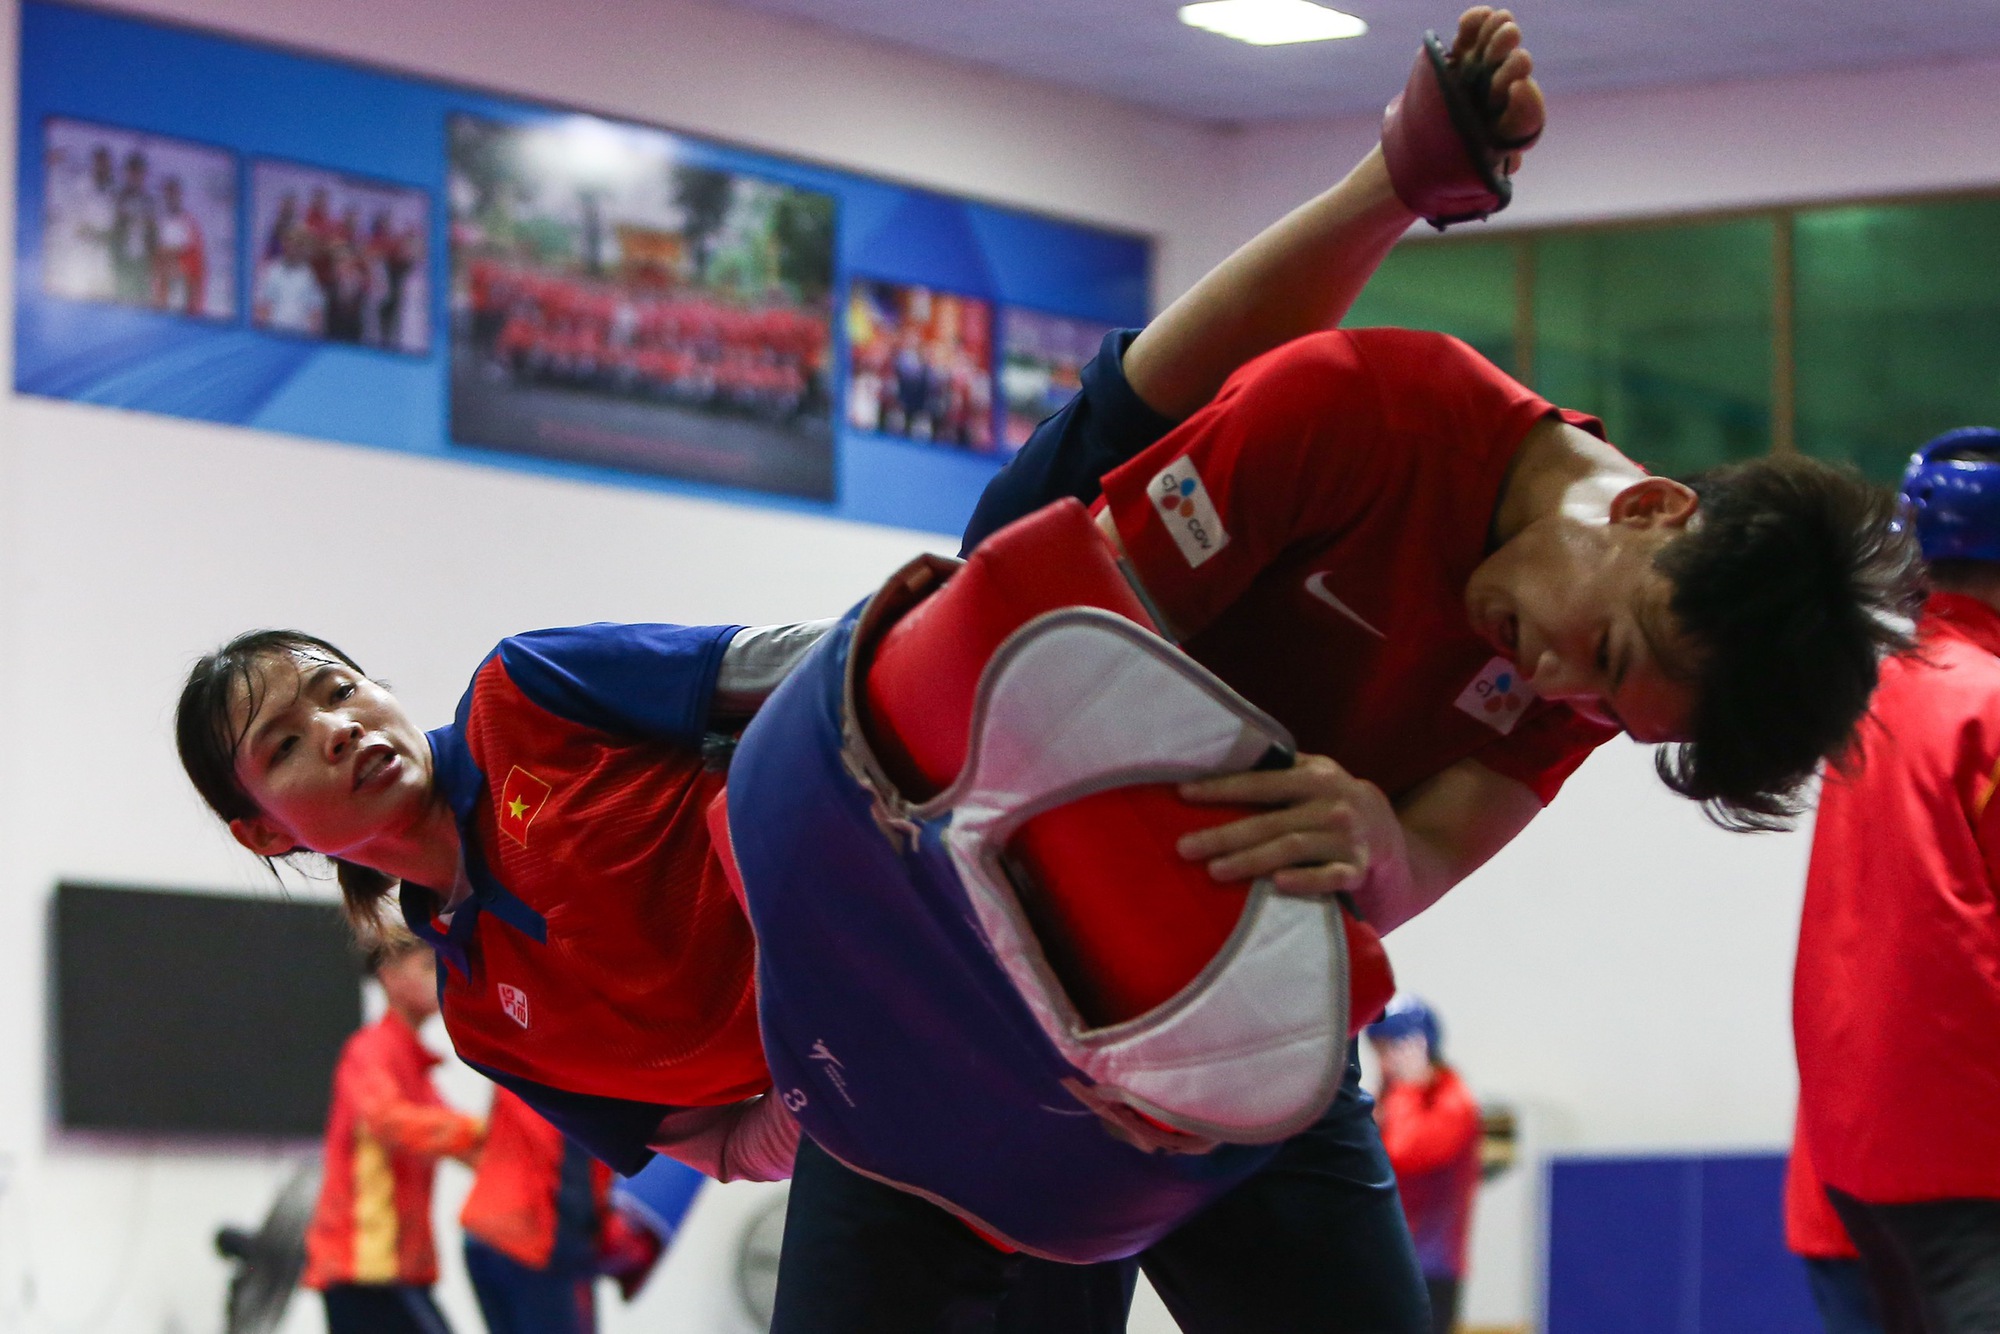 Tuyển Taekwondo Việt Nam: Chuẩn bị kĩ lưỡng cho thử thách khắc nghiệt tại vòng loại Olympic - Ảnh 1.